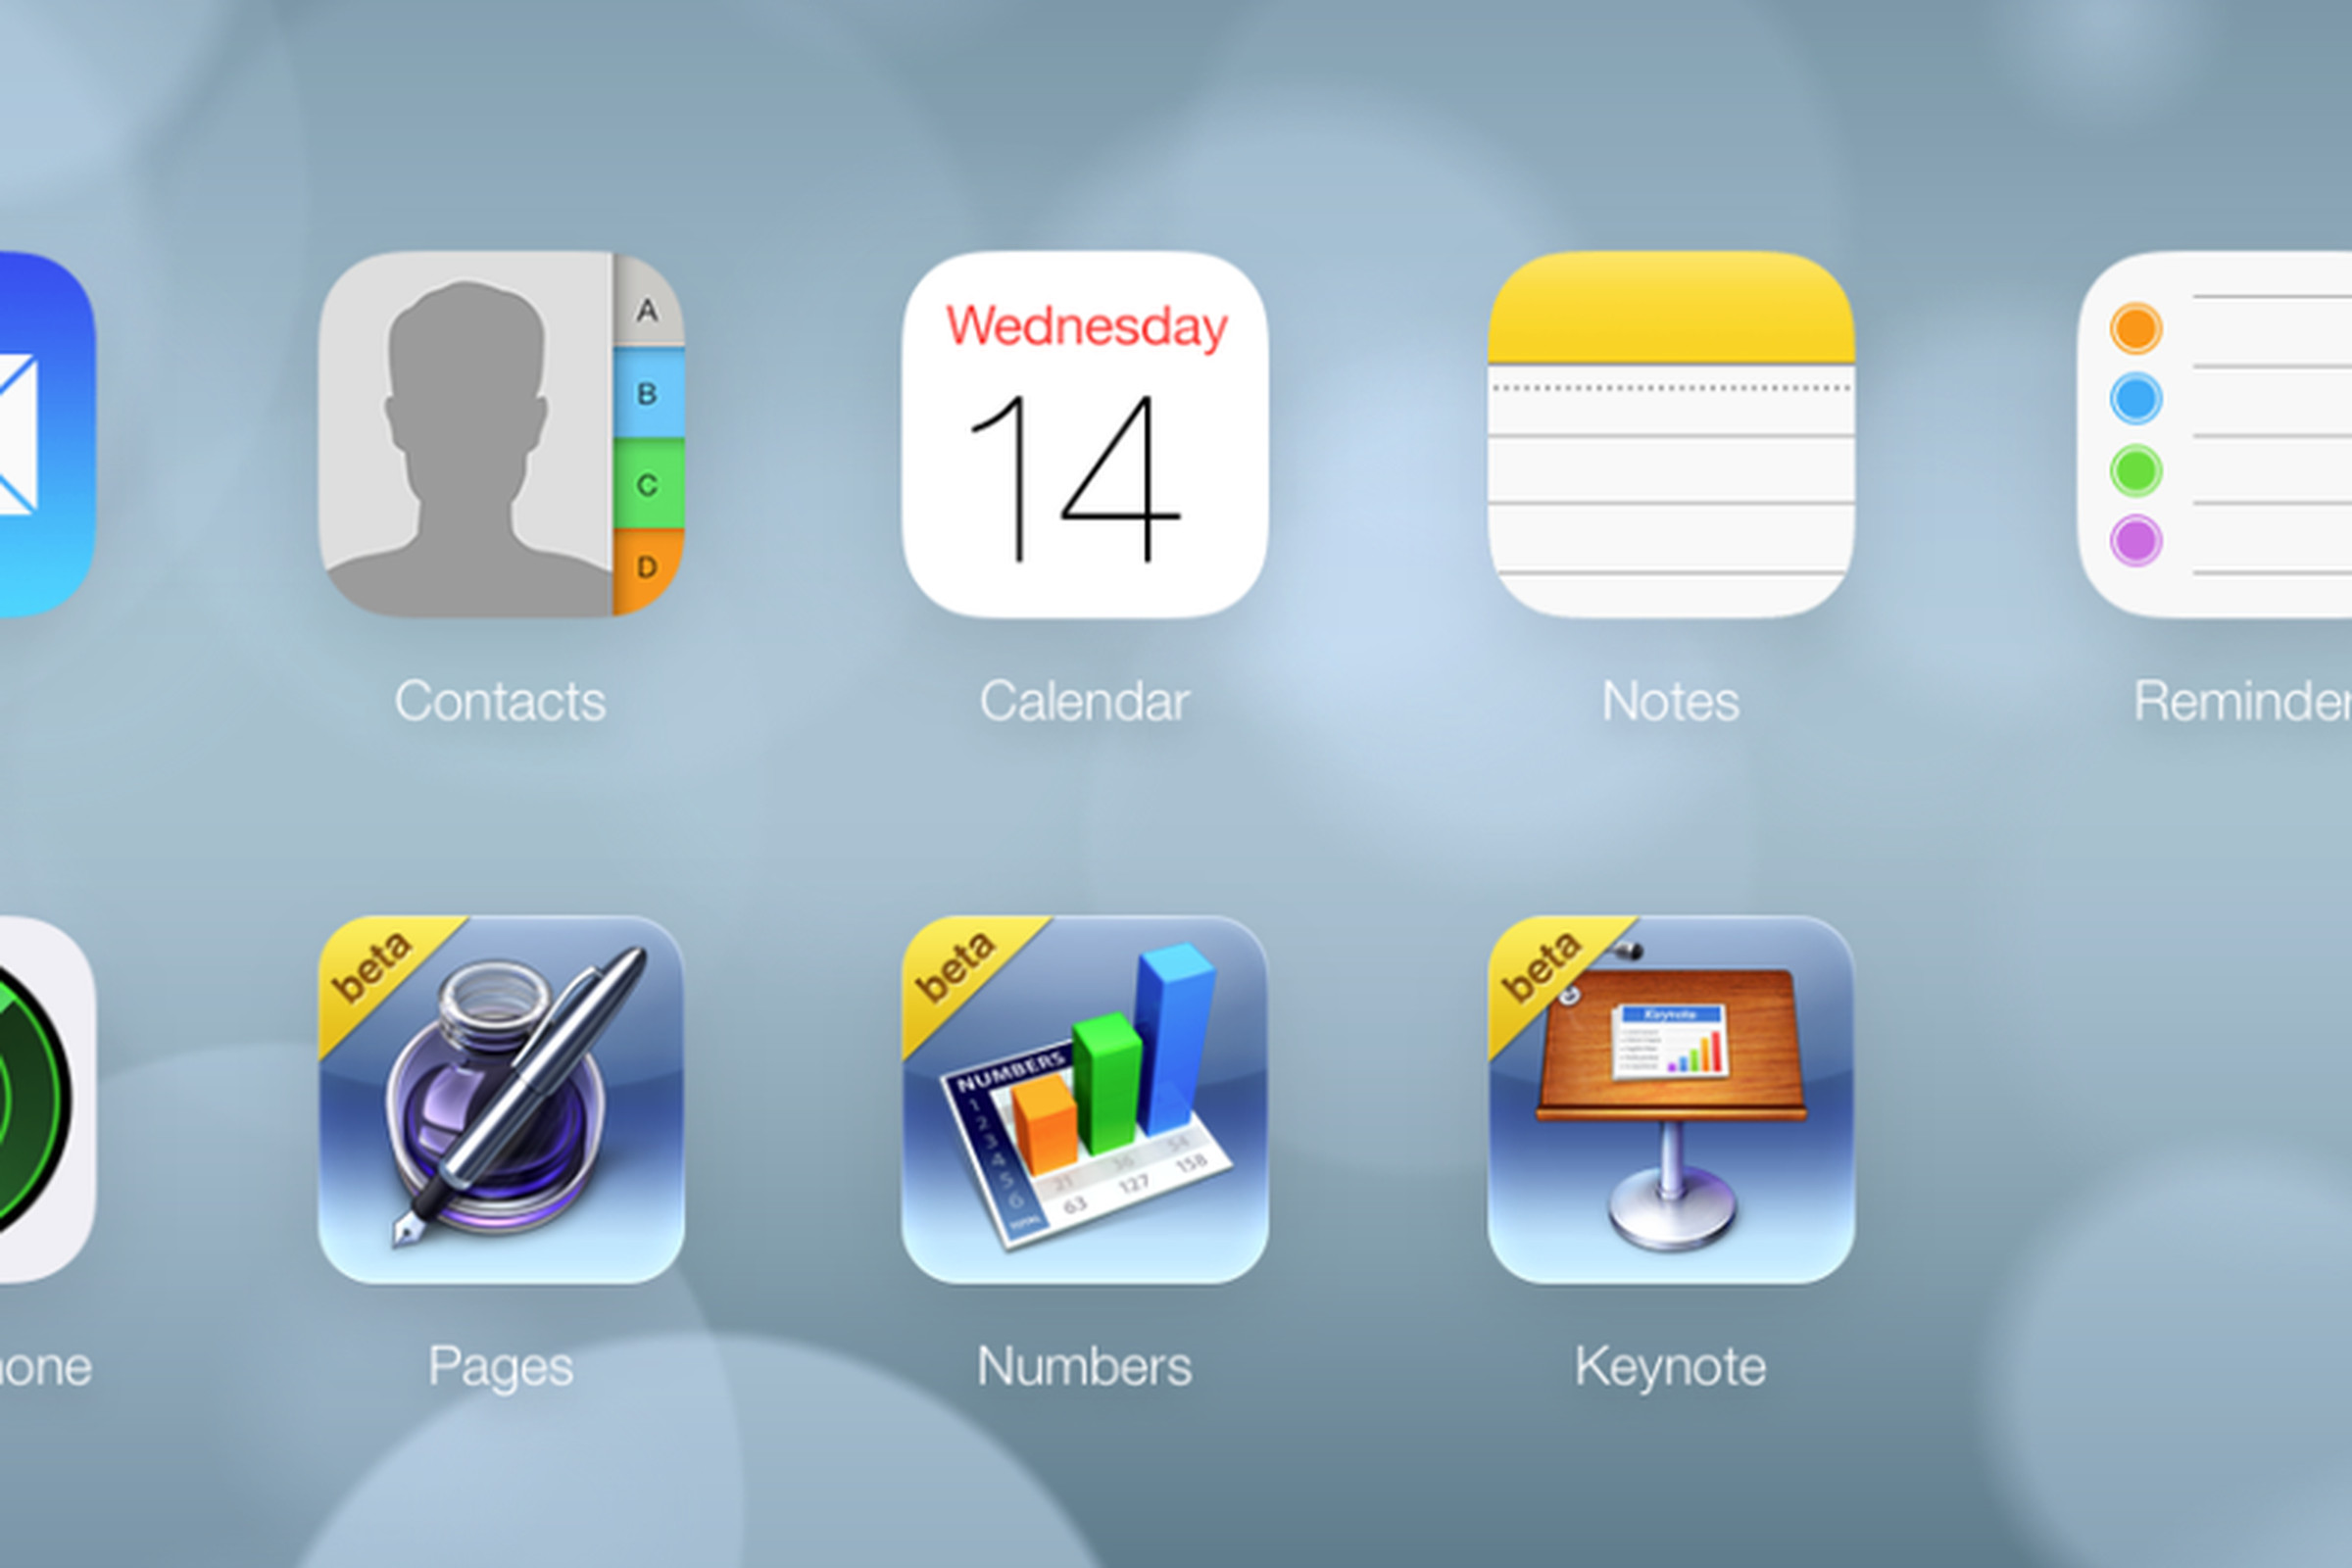 iCloud iOS 7 look